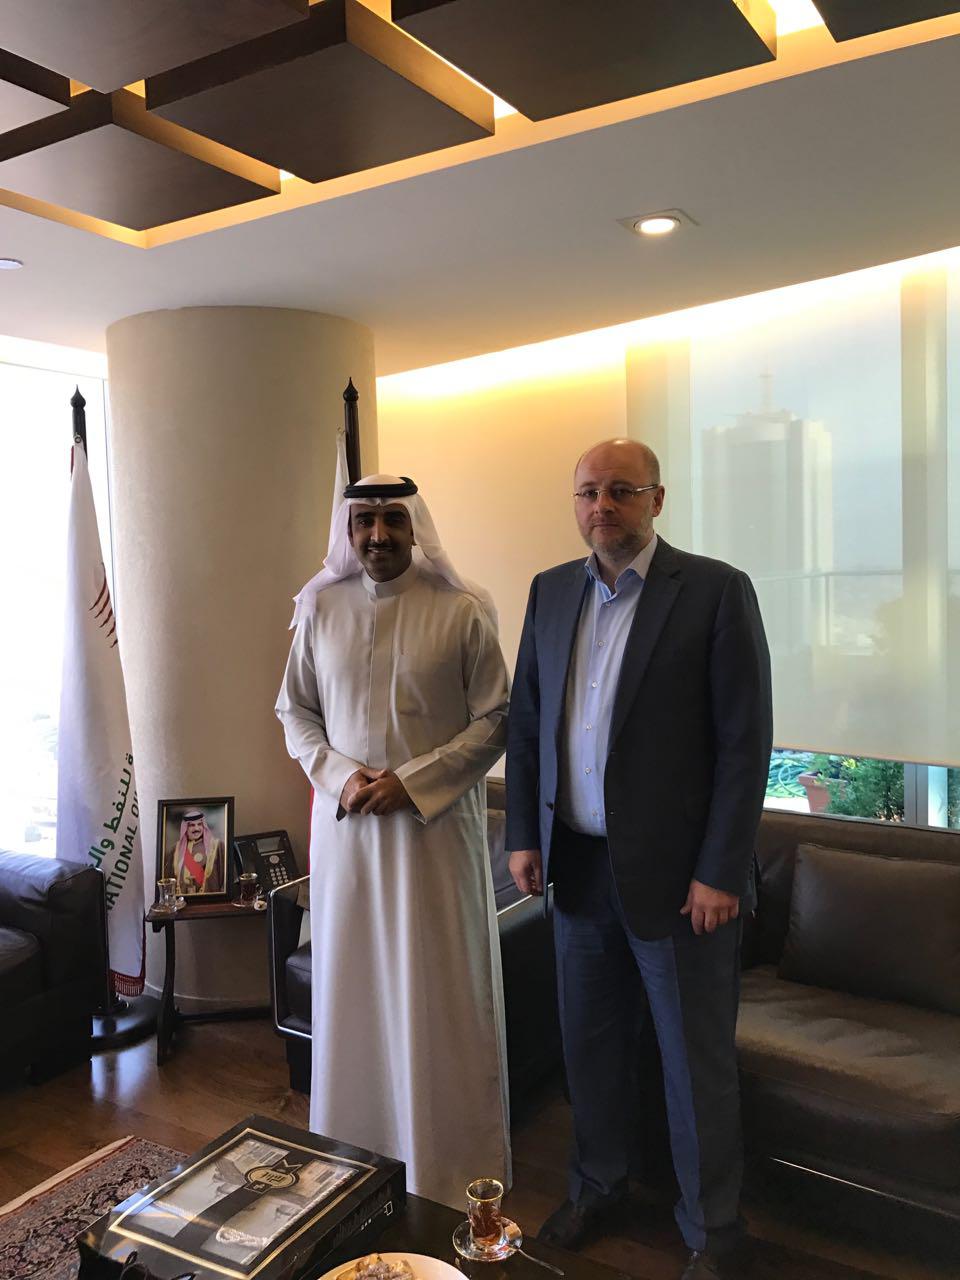 Встреча  учредителя компании Токаева Р.Б. с министром нефти государства Бахрейн Его Превосходительством Шейхом Мохаммедом бин Халифом Аль Халифом